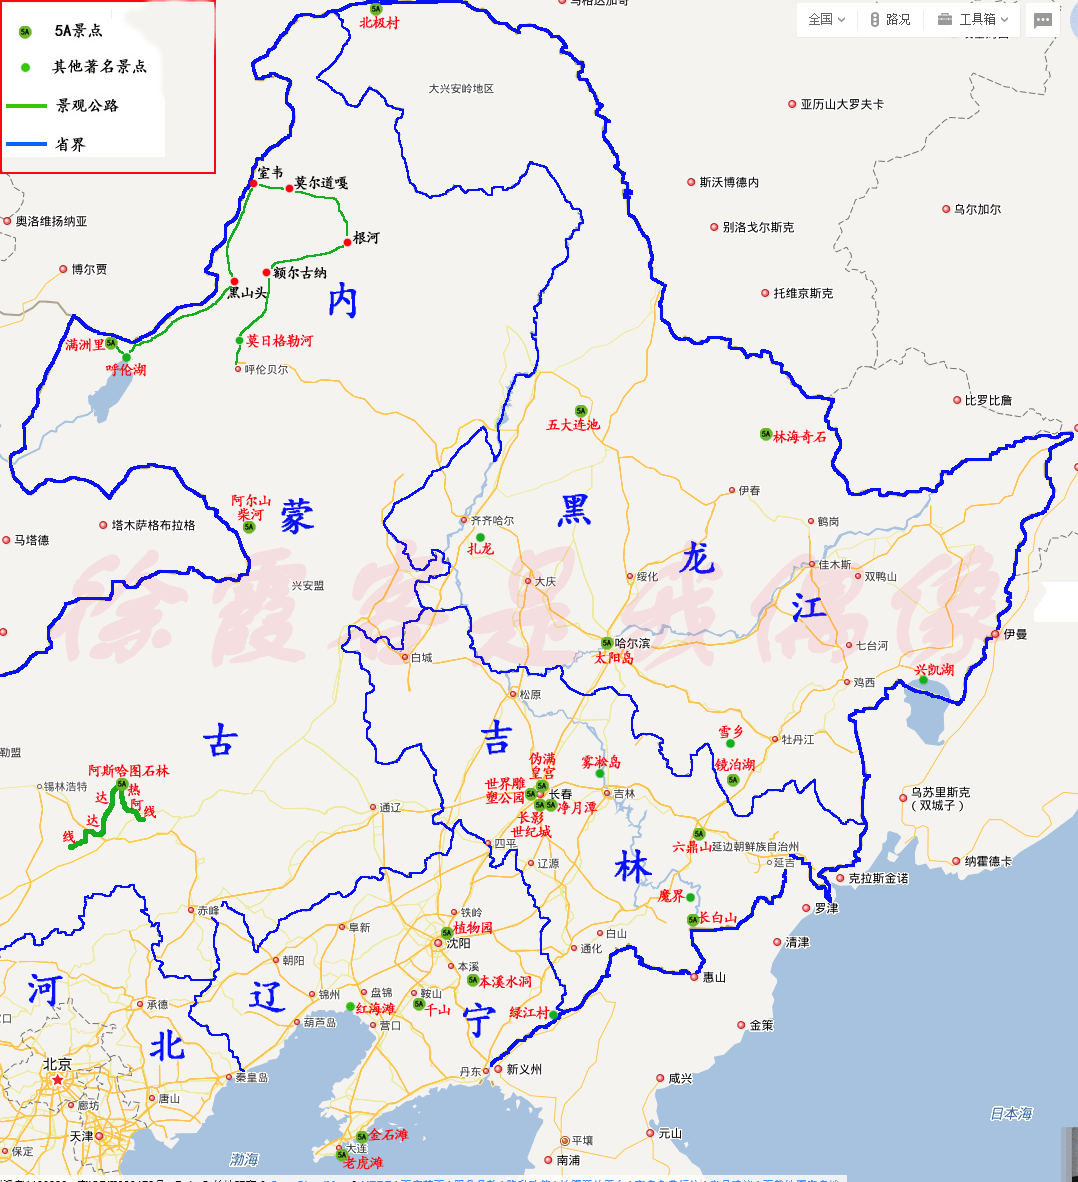 自制的东北地区旅游地图(点开放大更清晰)